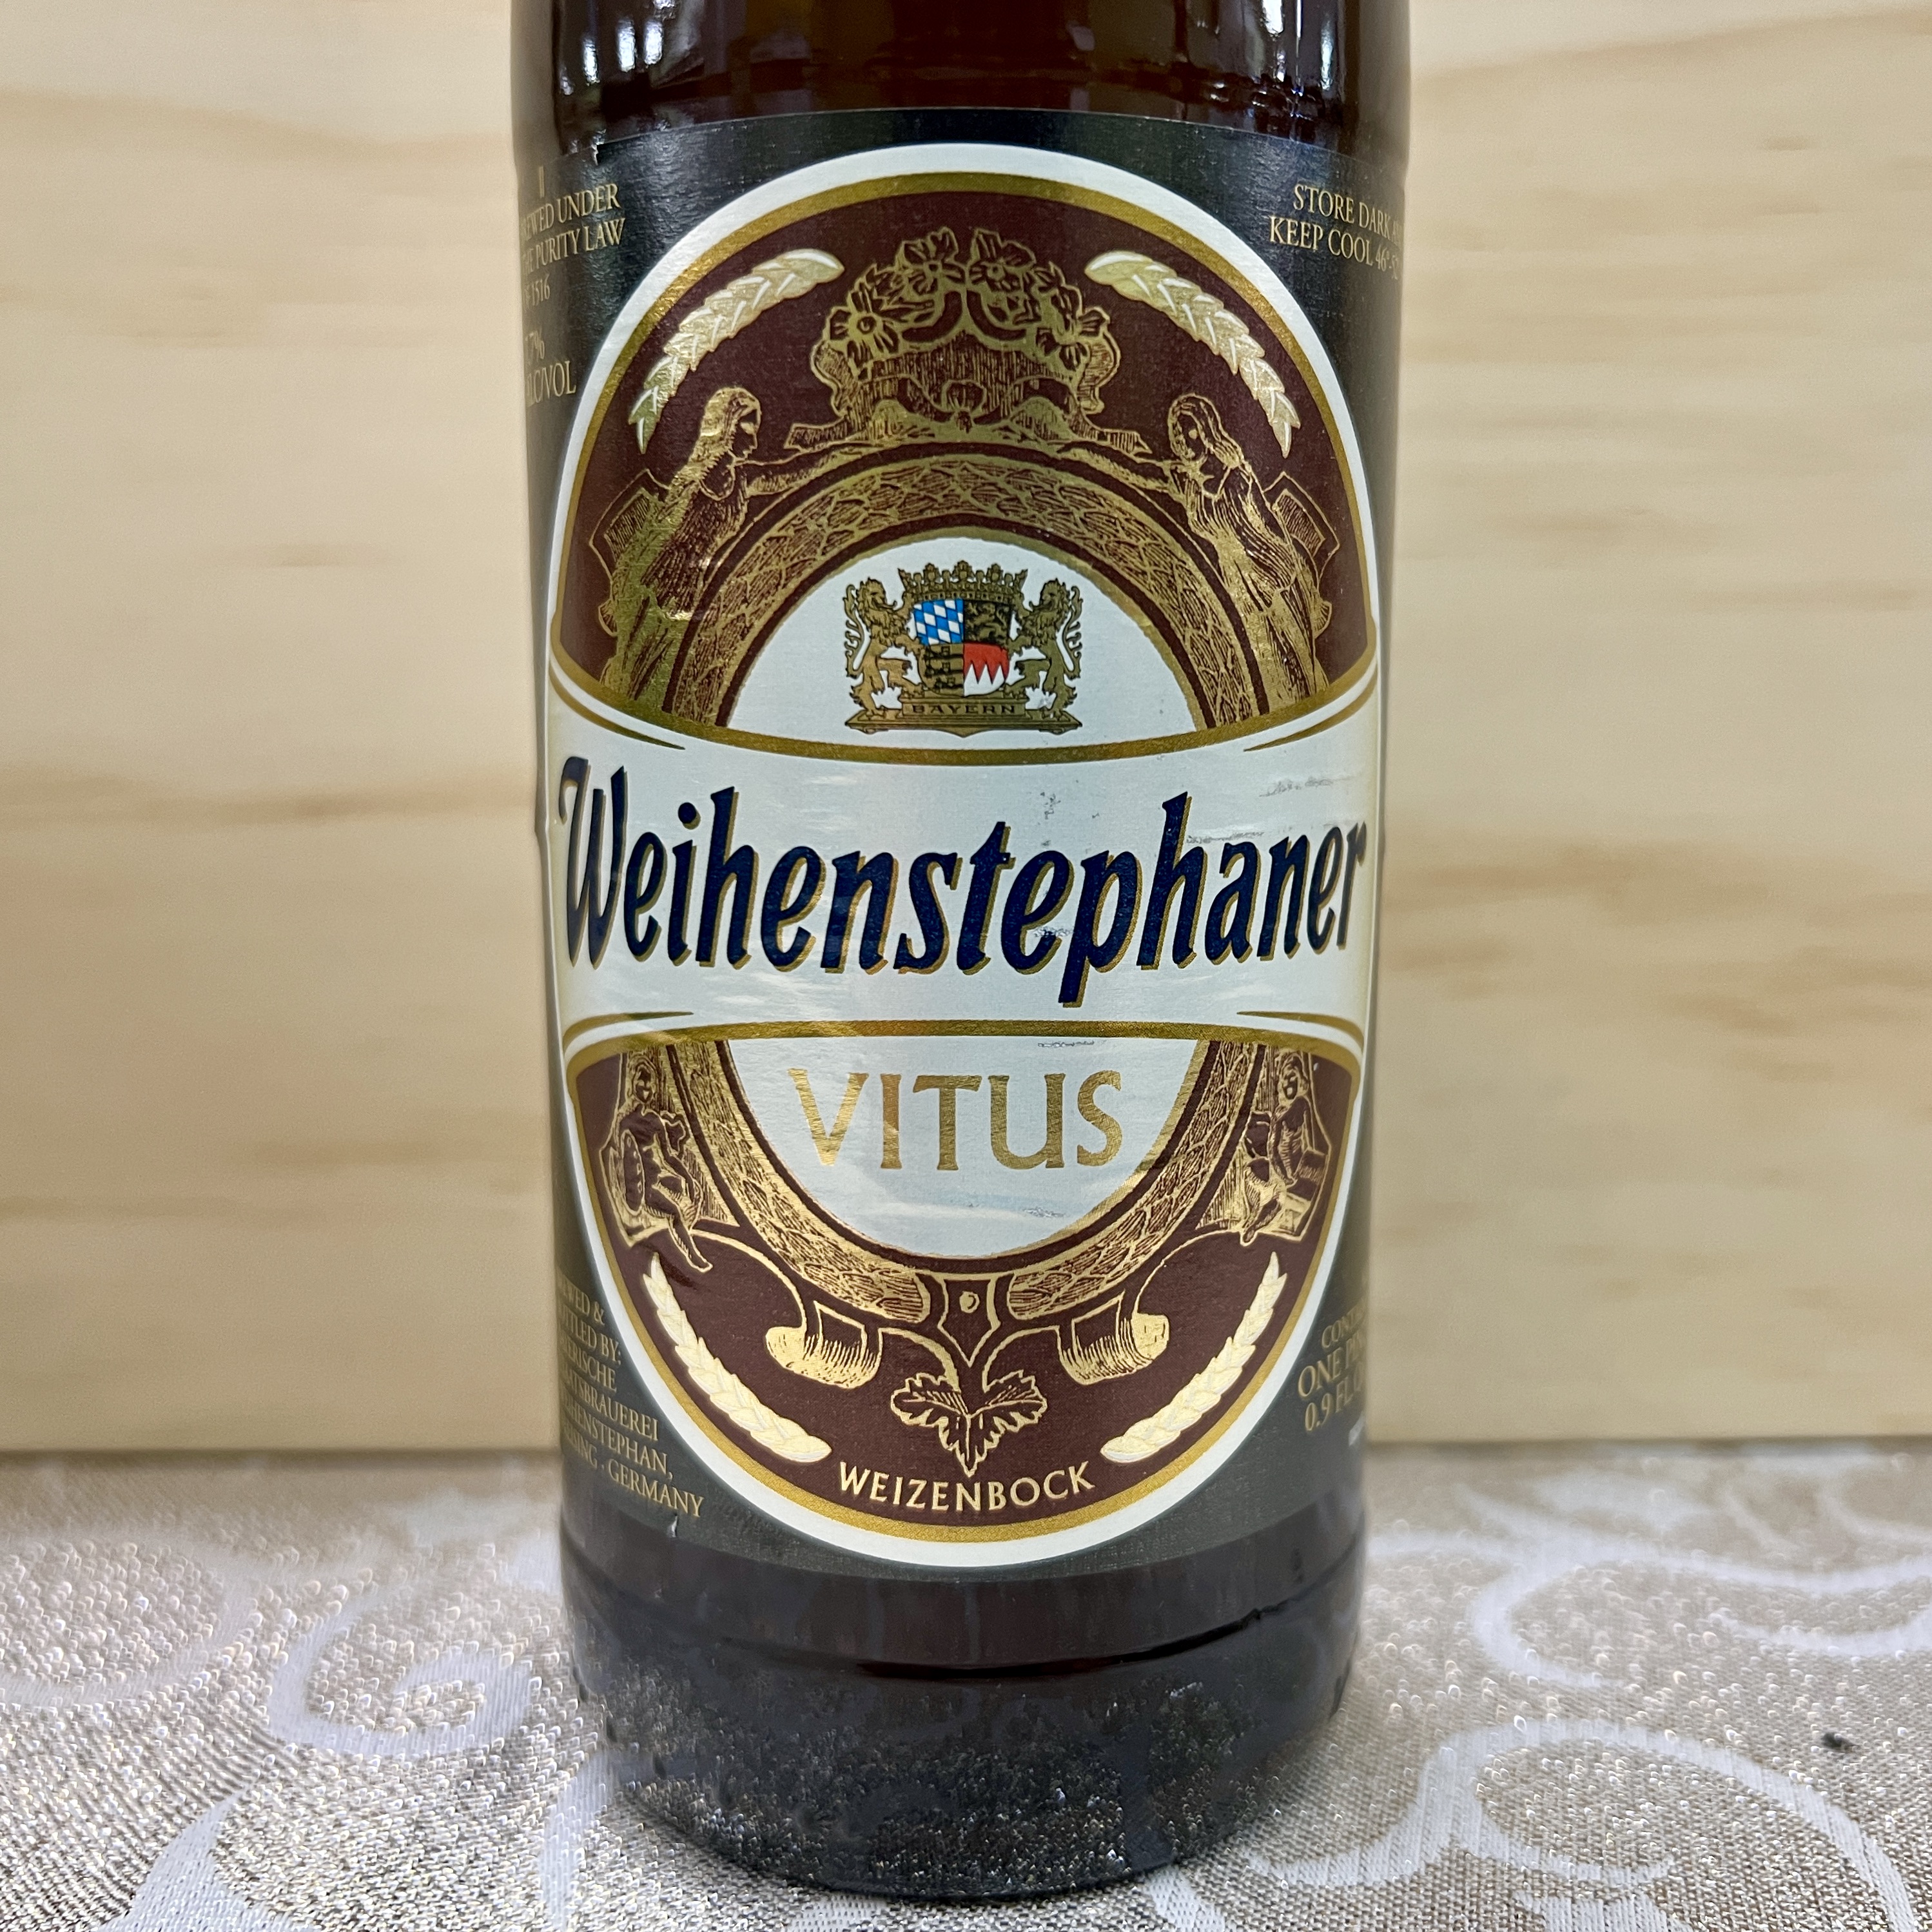 Weihenstephaner Vitus Wheat Bock 1 pint bottle